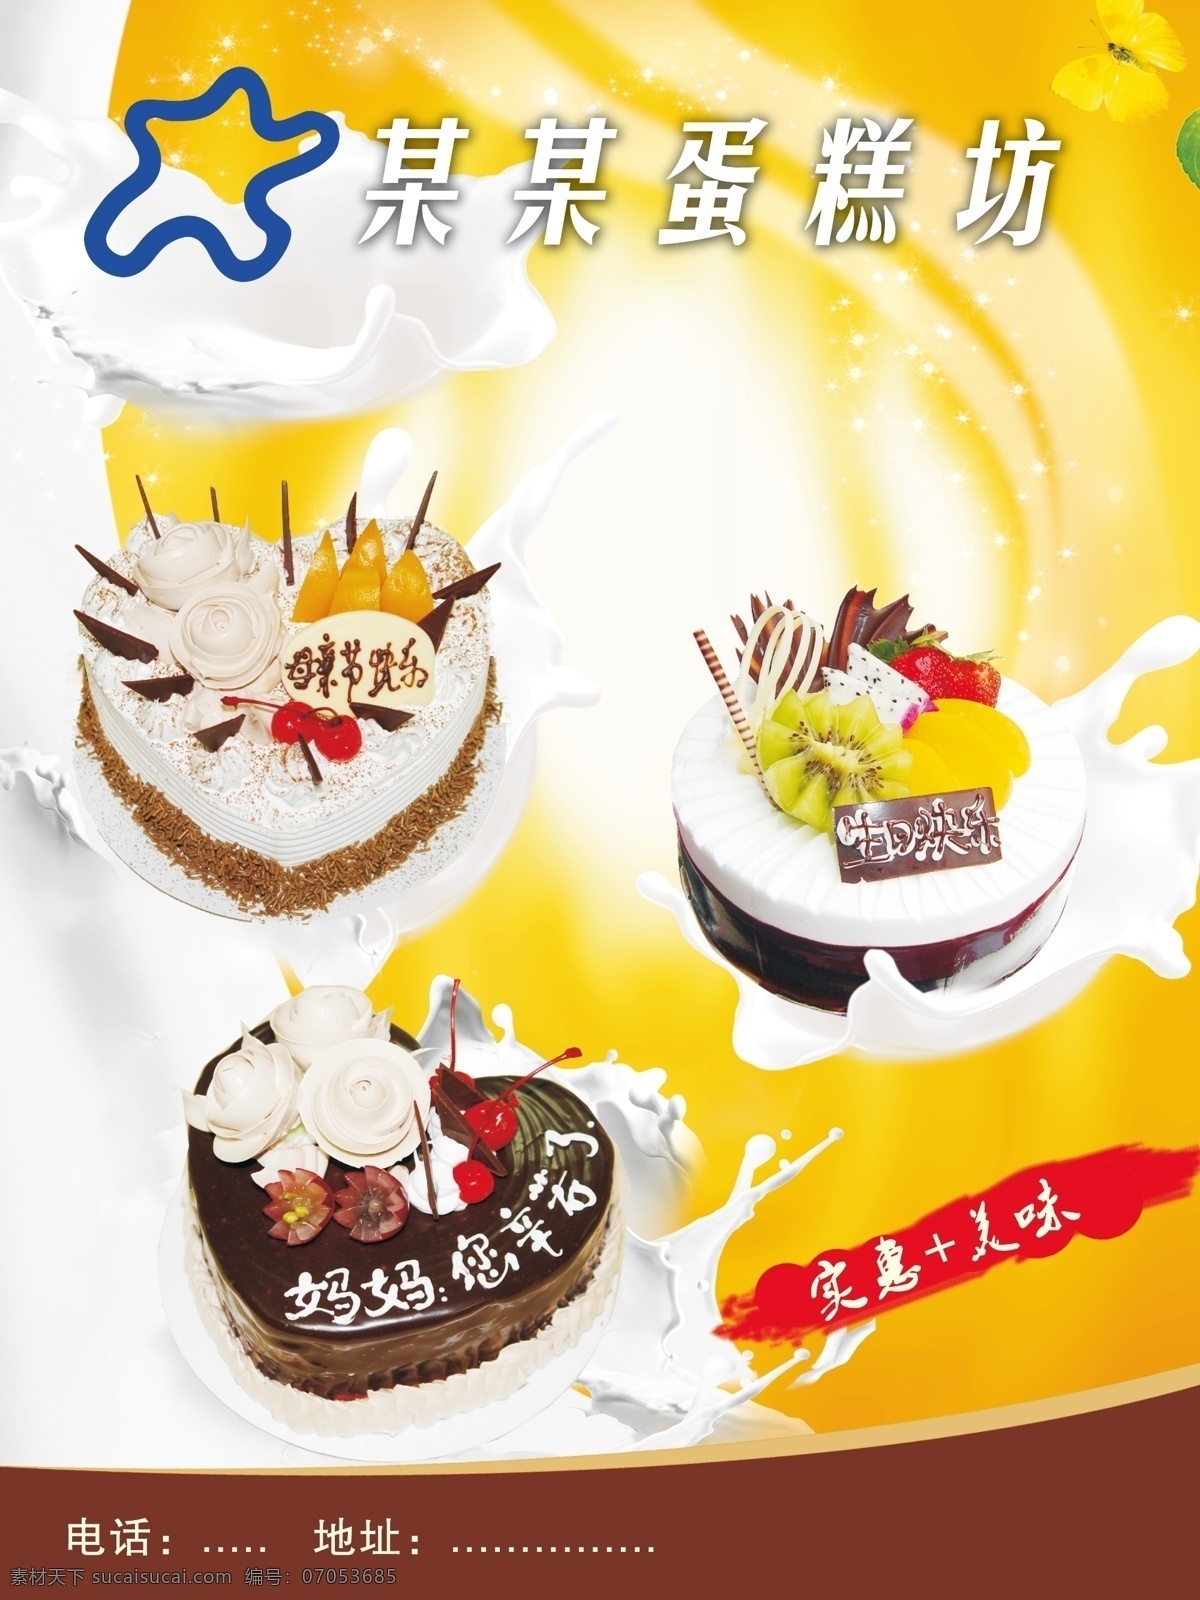 蛋糕坊 牛奶 蛋糕 鲜橙背景 蝴蝶 标志店名 广告设计模板 源文件